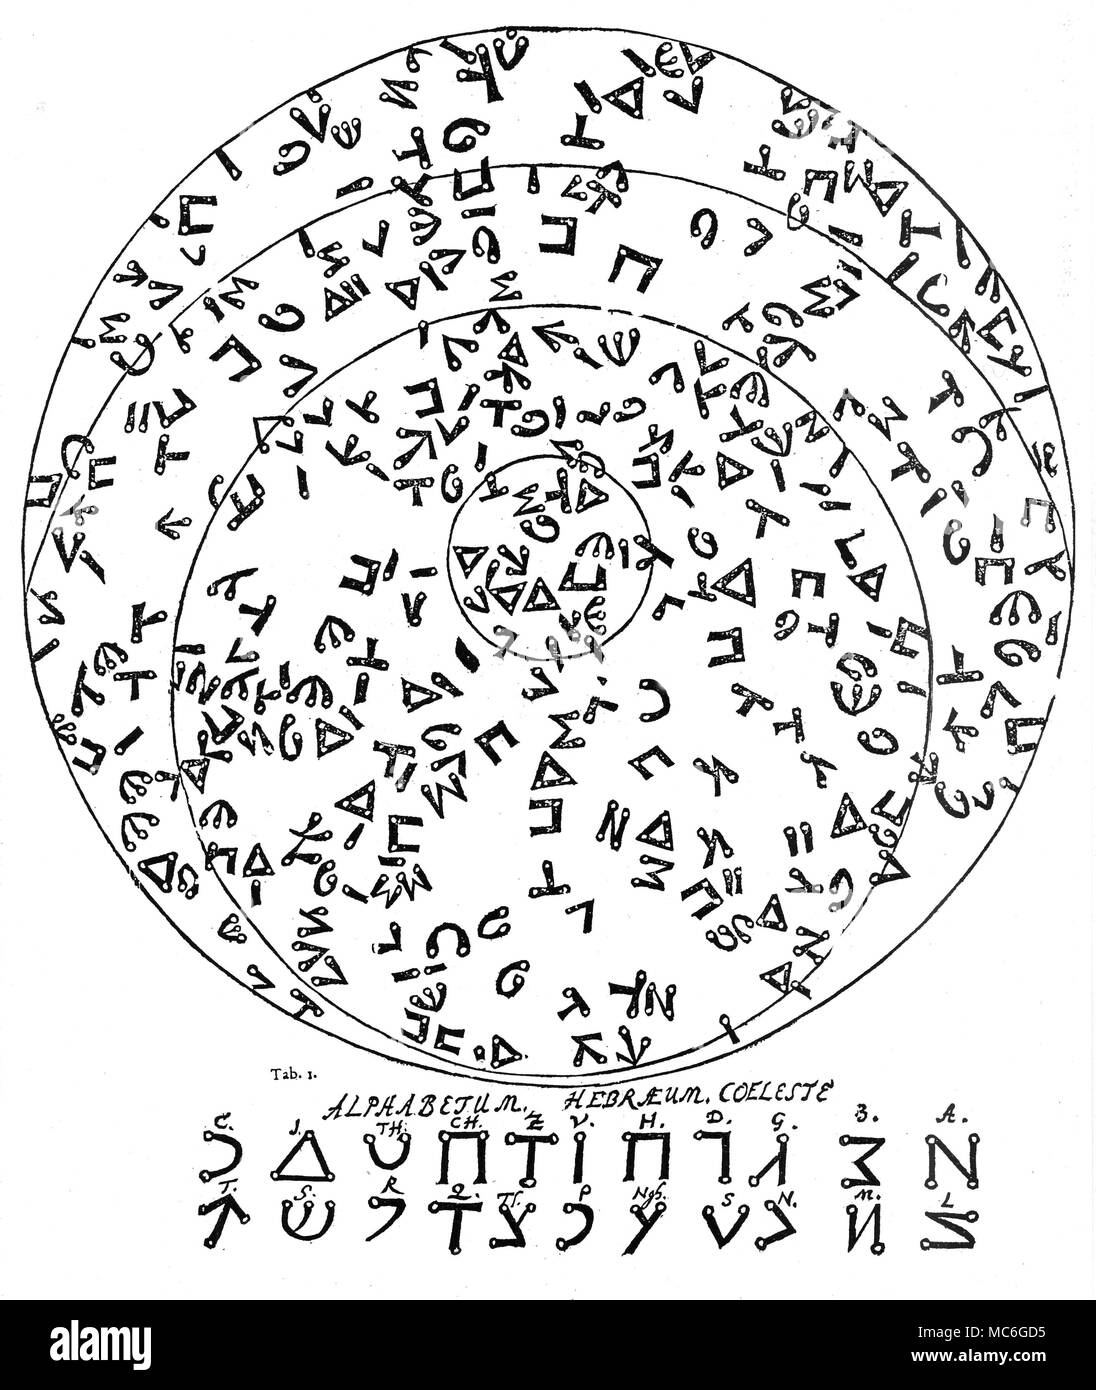 ALPHABETS - SECRET SCRIPT céleste l'alphabet hébraïque appelé Alphabetum Coeleste, ou le script, au pied d'un corps céleste image du ciel avec les étoiles et les constellations, visualisée comme lettre hébraïque-formes. Pliage de tôles d'Gaffarellli Curiositez Inouyes, Jacob, Hoc est : Curiositates Inauditae, 1678 Banque D'Images